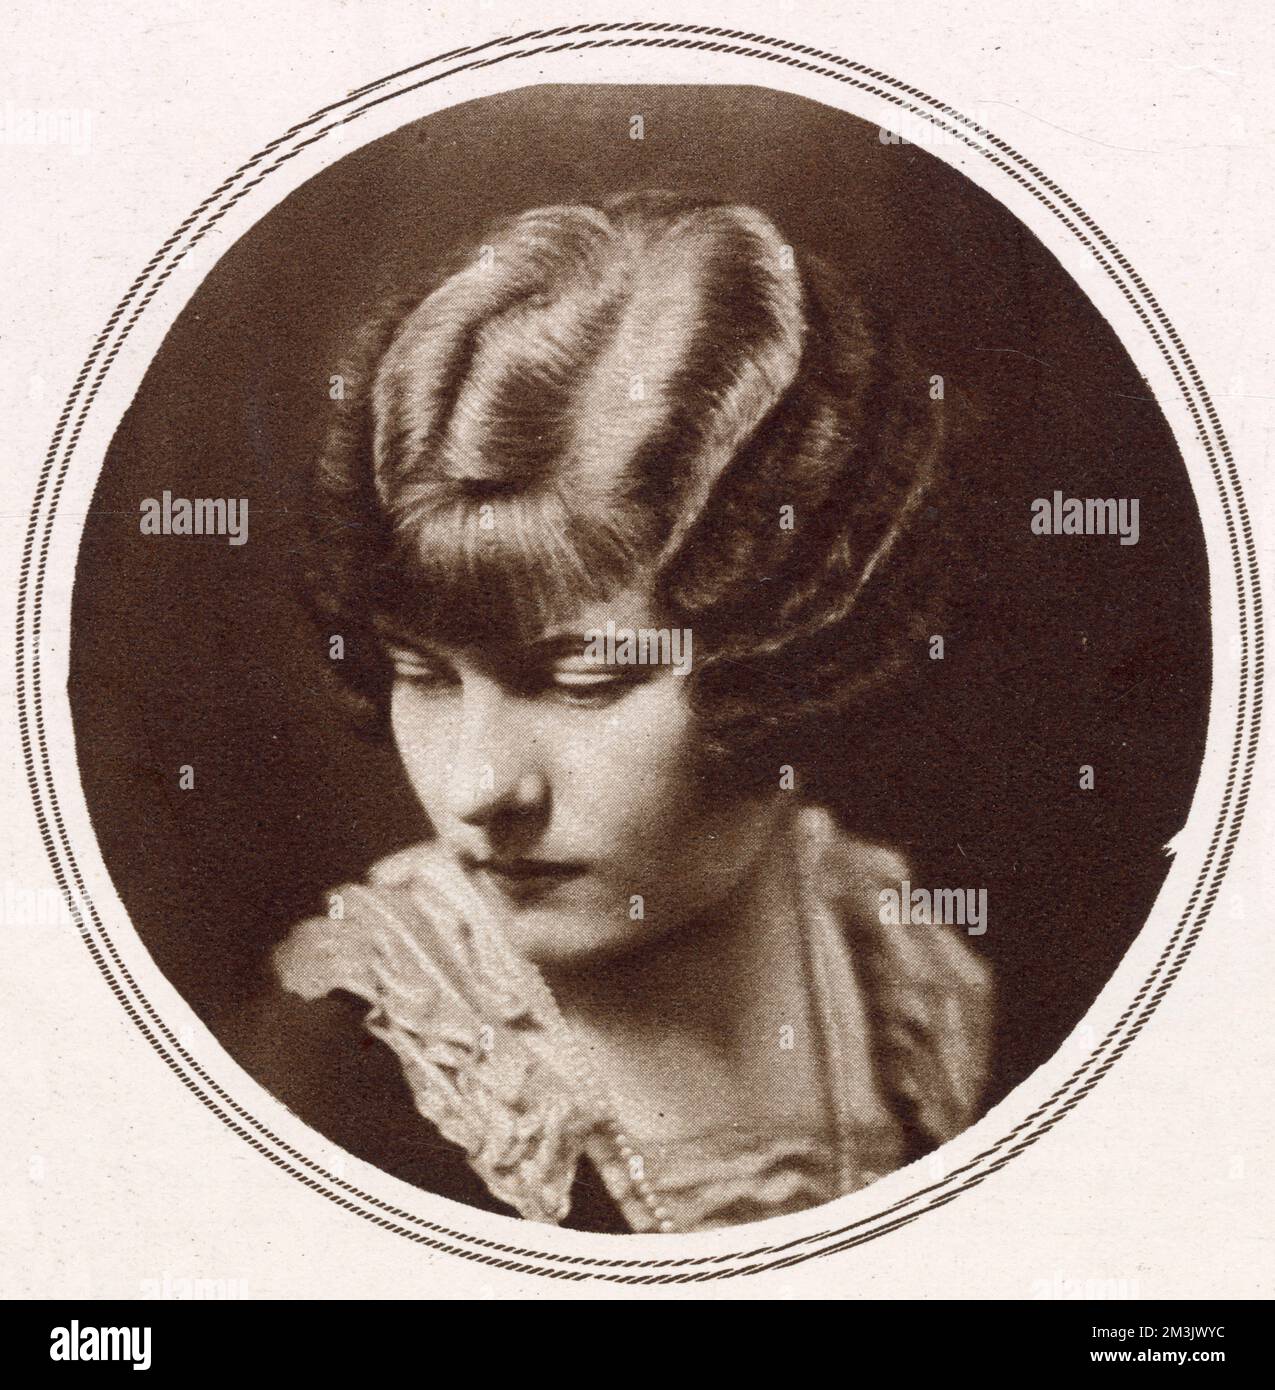 Un peinado ondulado permanentemente por Feminix salon, Piccadilly, Londres, 1926. El cabello 'teñido' o 'bobinado' se hizo universalmente popular durante la década de 1920, un reflejo de la libertad recién descubierta de las mujeres, siguiendo su nuevo derecho al voto. El cabello se le dio con frecuencia una onda permanente, y los anuncios que ensalzaban las virtudes de la última onda permanente eran comunes. Foto de stock